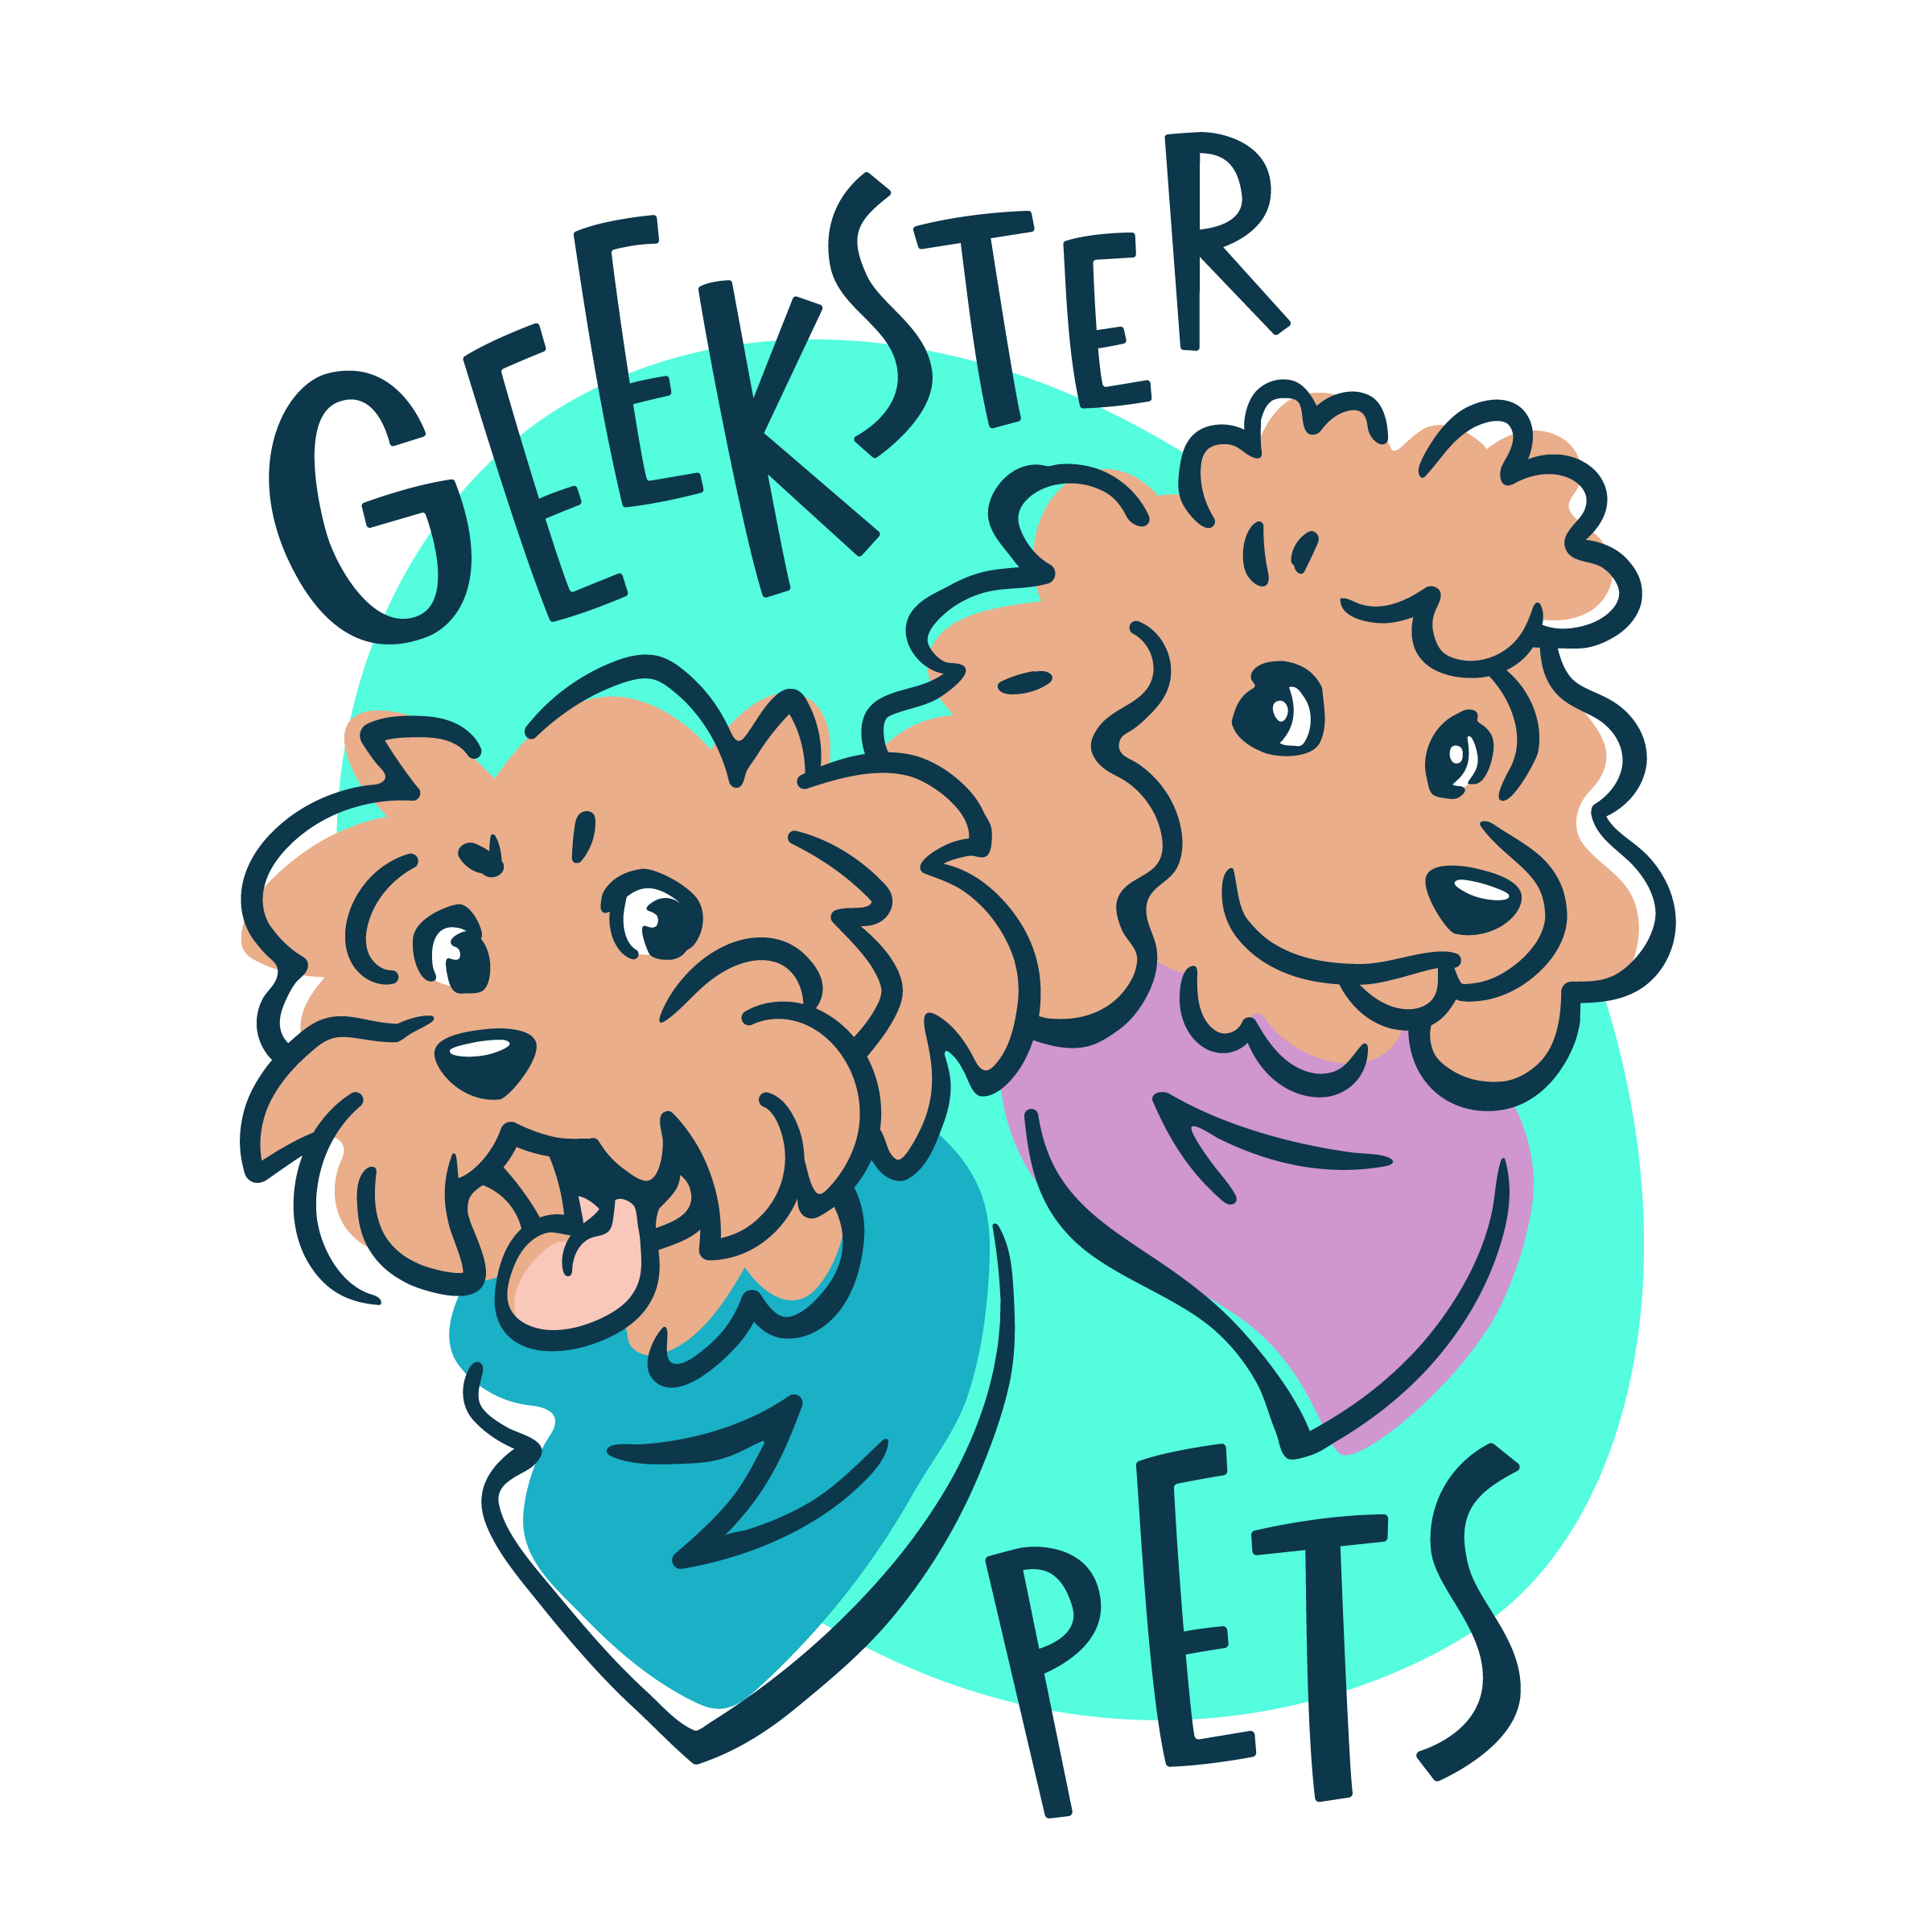 GeeksterPets_Logo.png